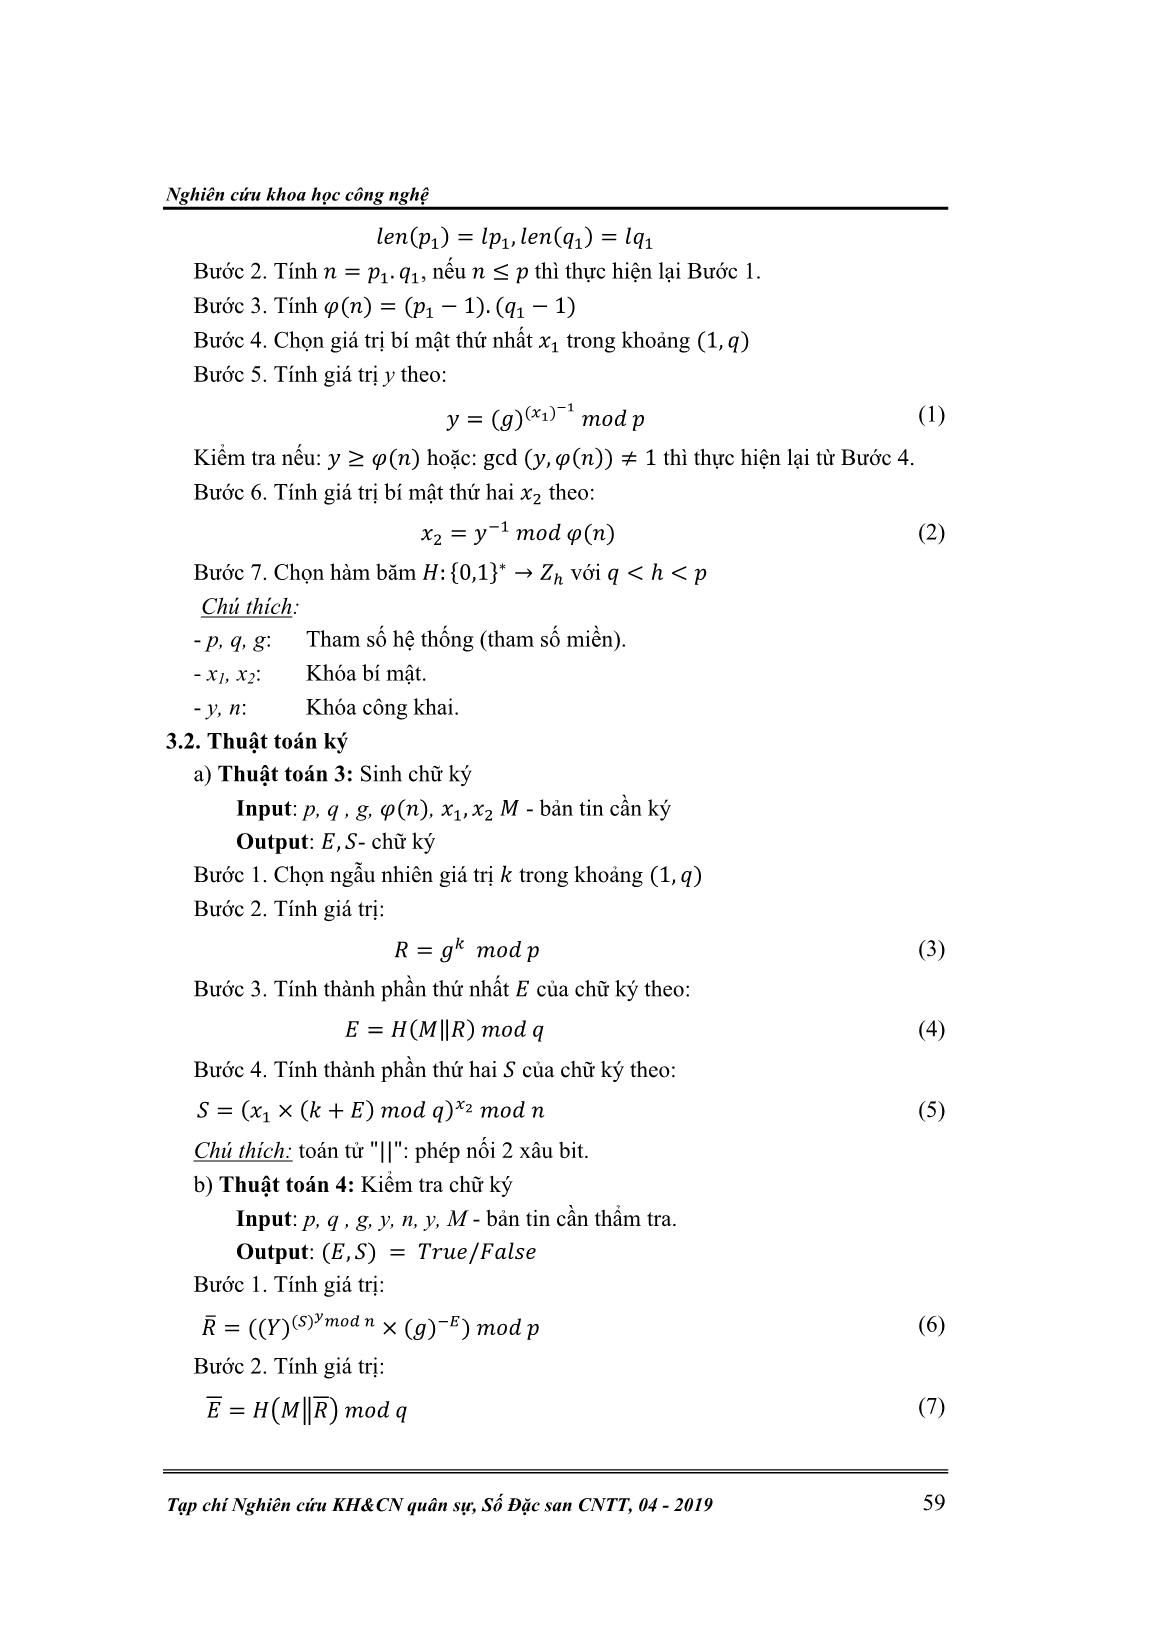 Một lược đồ chữ ký xây dựng trên tính khó của việc giải đồng thời 2 bài toán logarit rời rạc và phân tích số trang 3